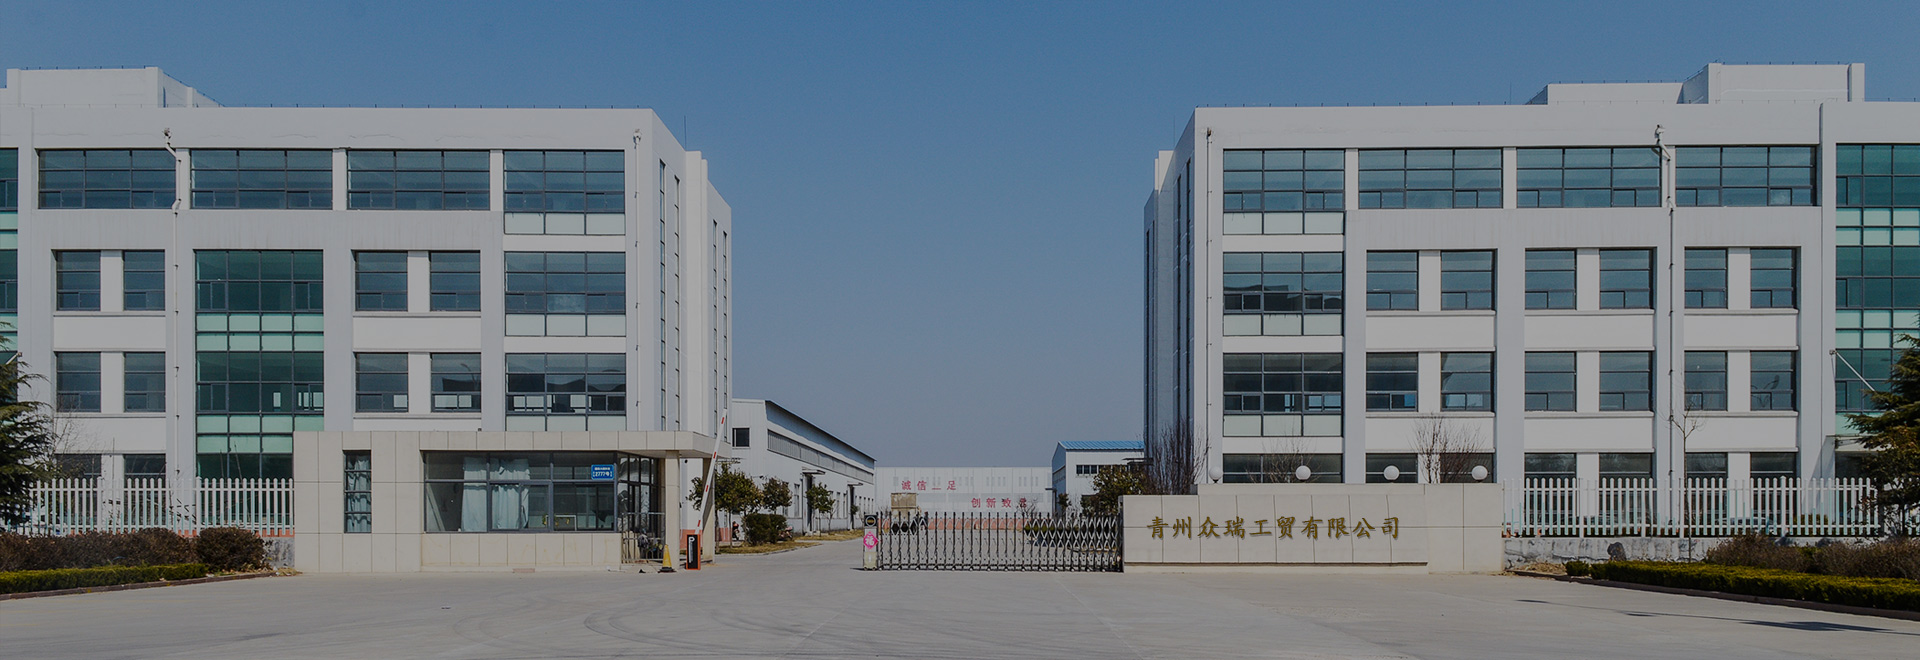 Qingzhou Zhongrui Industry and Trade